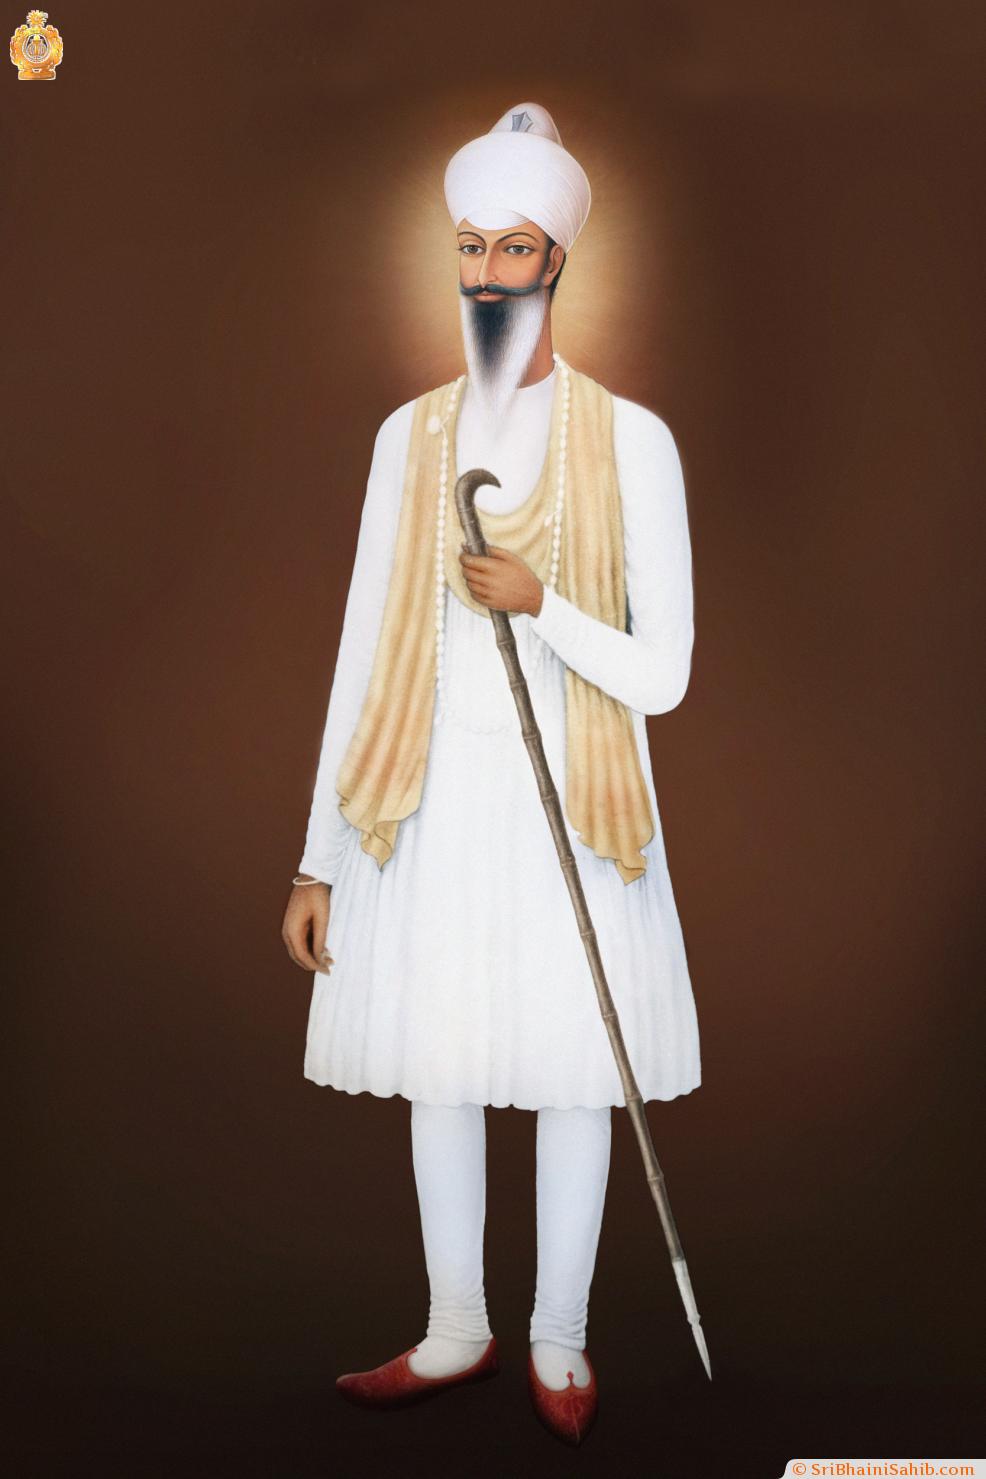 Sri Satguru Ram Singh Ji